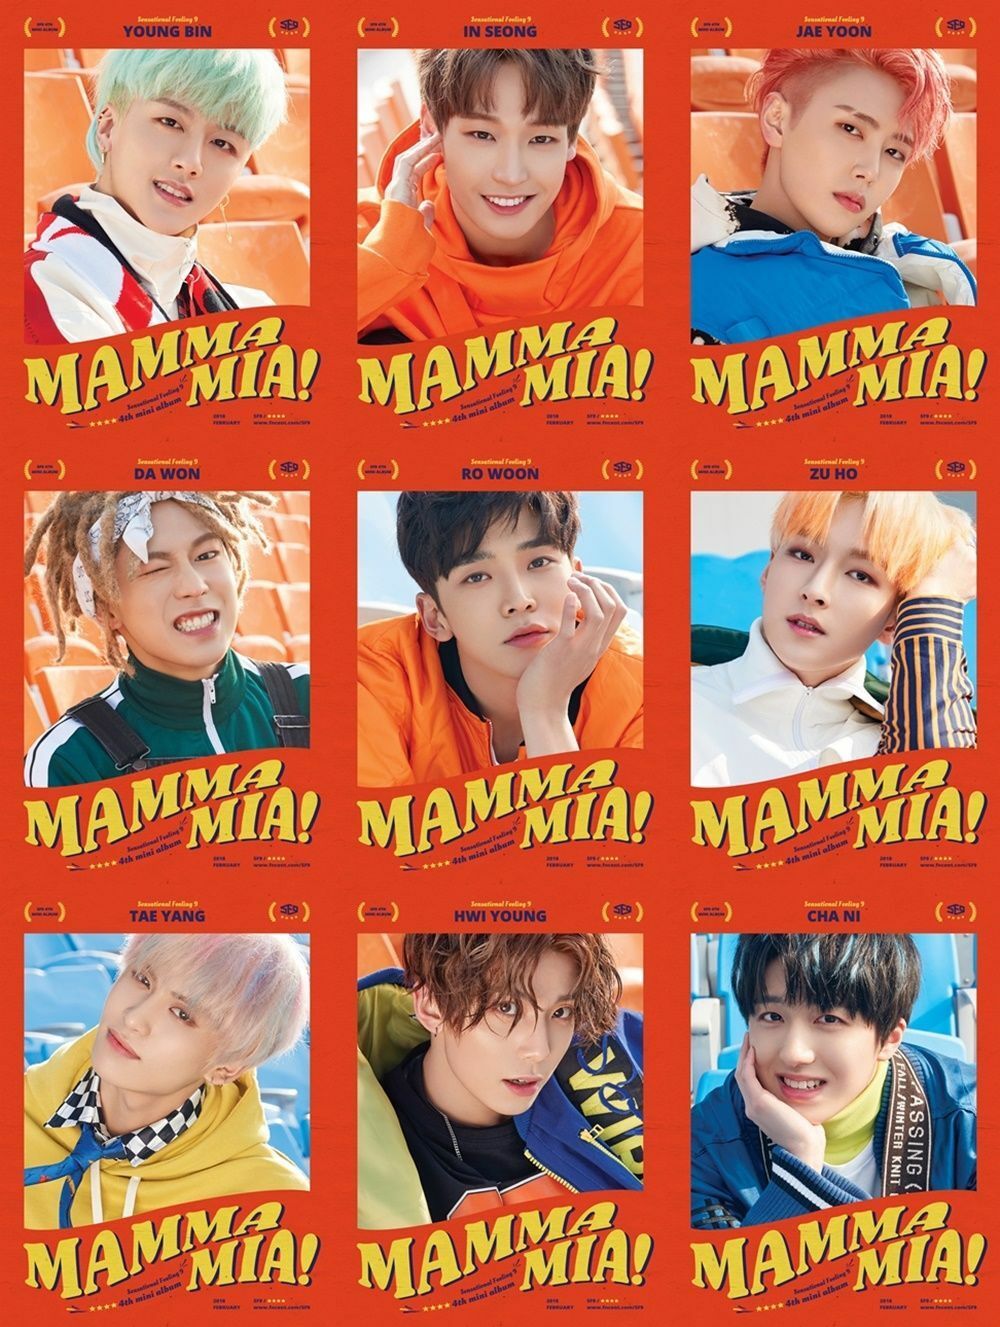 MAMMA MIA! I found real love! SF9 4th mini album 'MAMMA MIA!' SF9 returns as the protagonist in a teen musical movie throu...